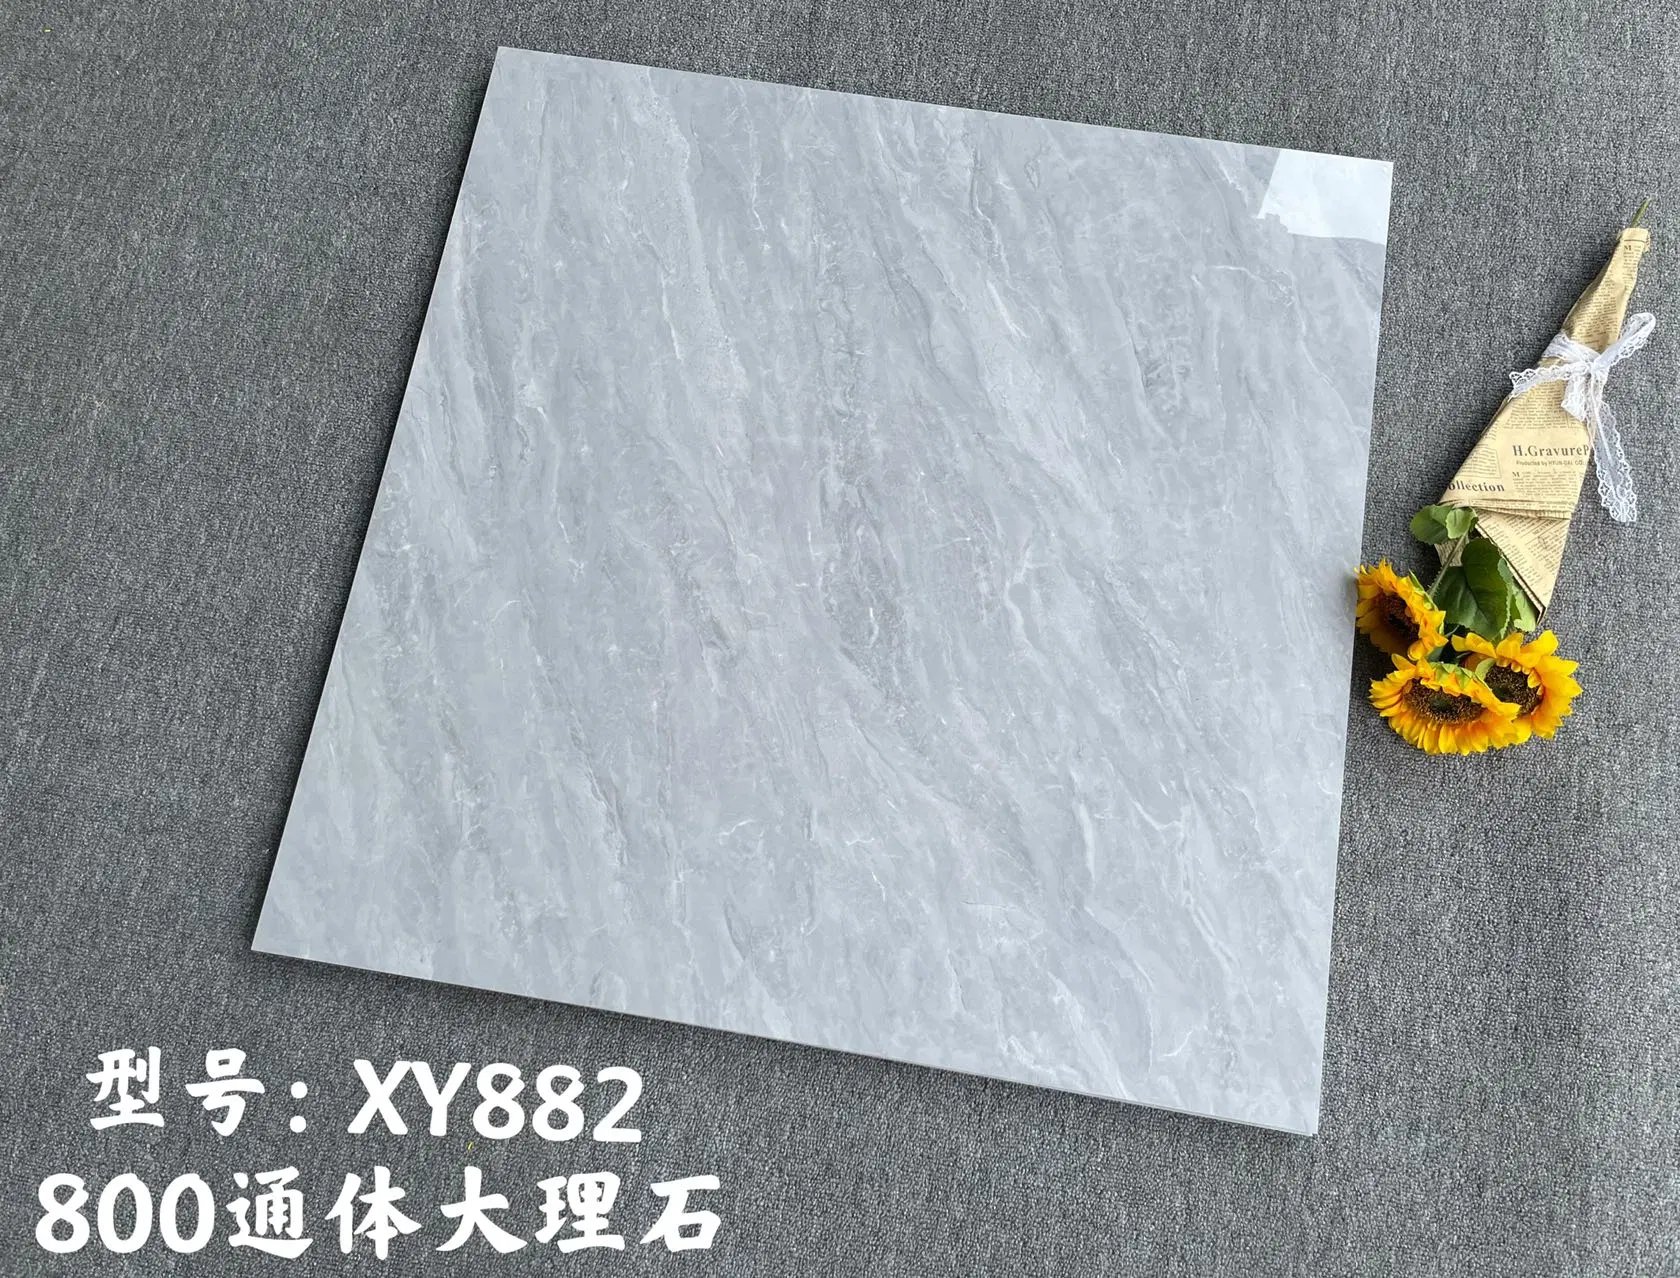 Carrelage de sol en marbre céramique de Guangdong en Chine pour salon moderne, carrelage de sol gris 800*800 pour chambre, carrelage en marbre de brique antidérapant.